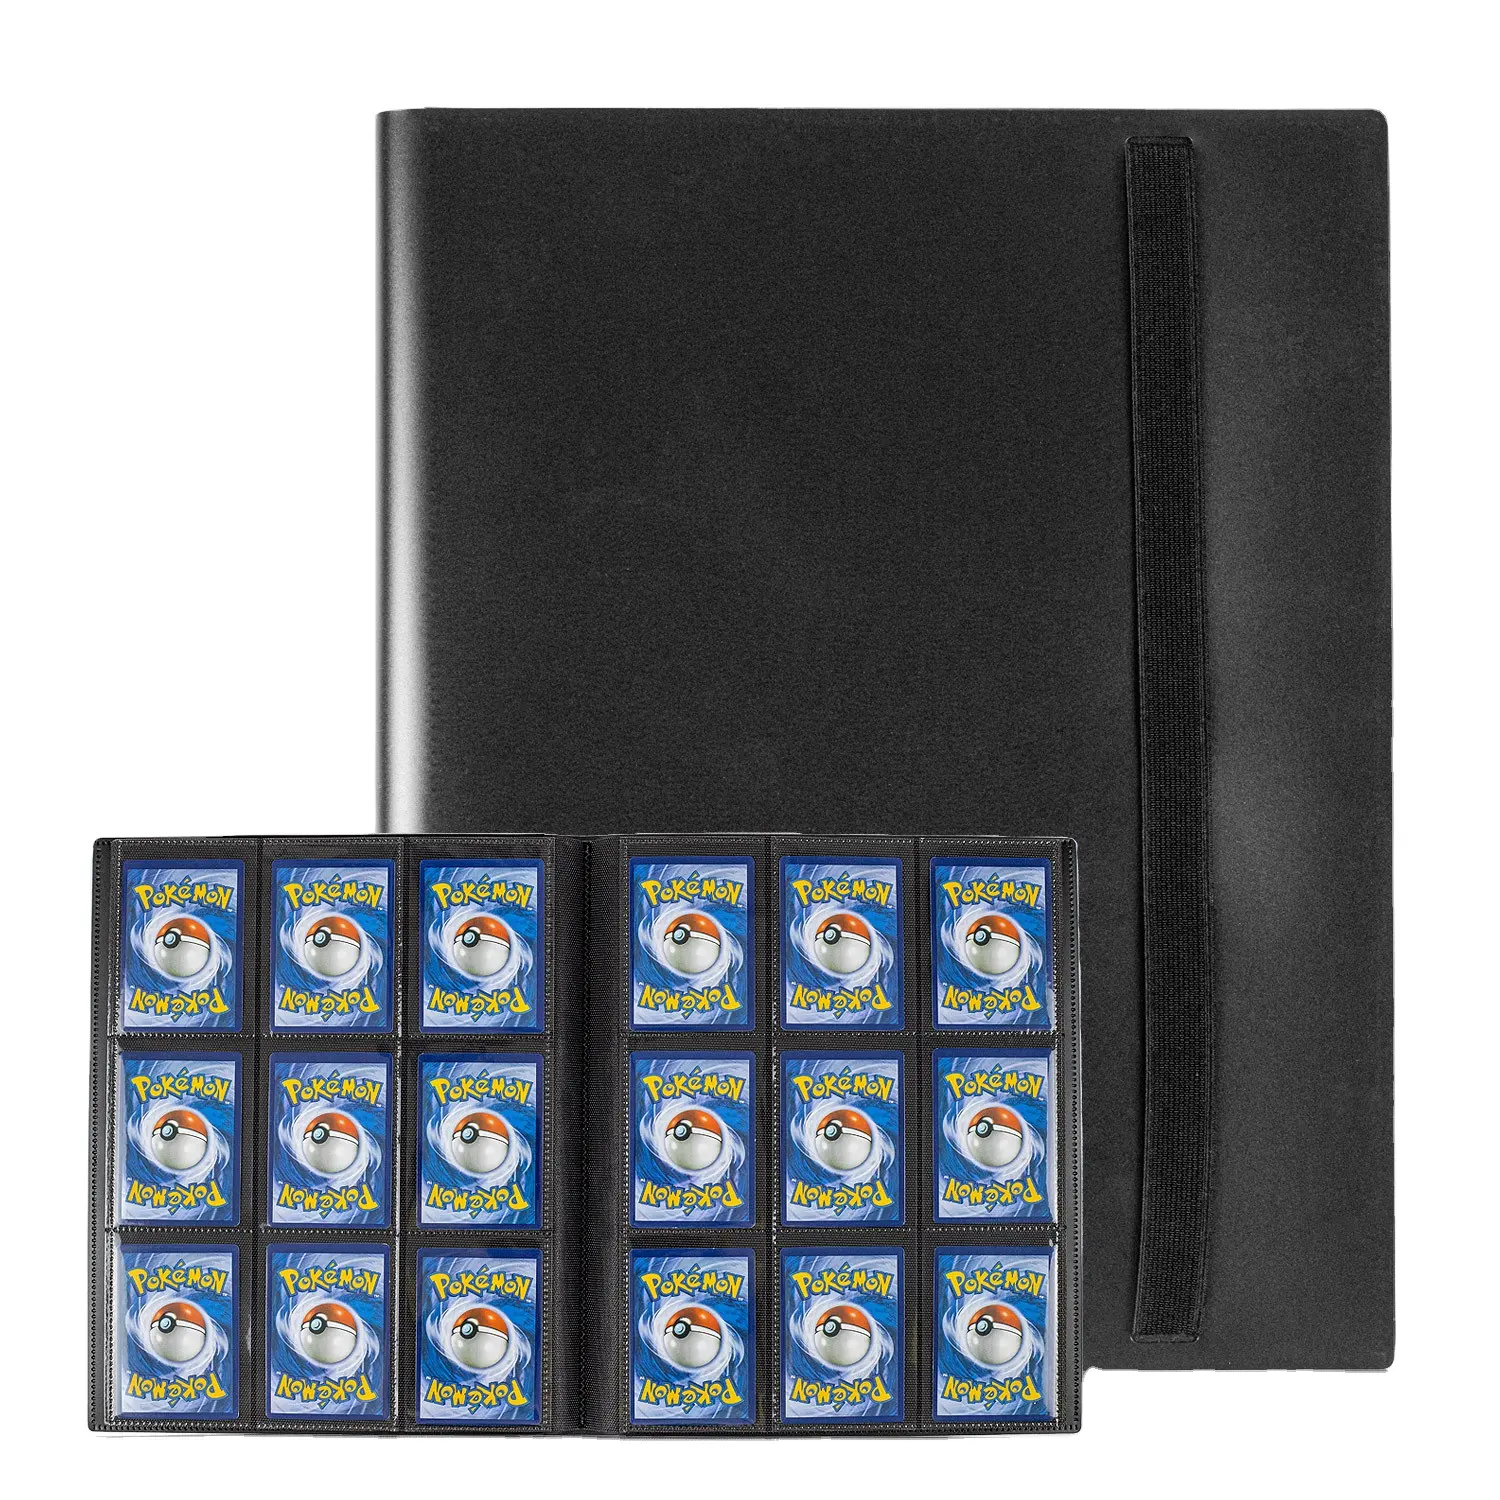 फैक्टरी सस्ती कीमत फोटो एलबम संग्रह ट्रेडिंग कार्ड टॉलोडर बिंदर कार्ड धारक प्रीमियम 9 पॉकेट टोलोडर